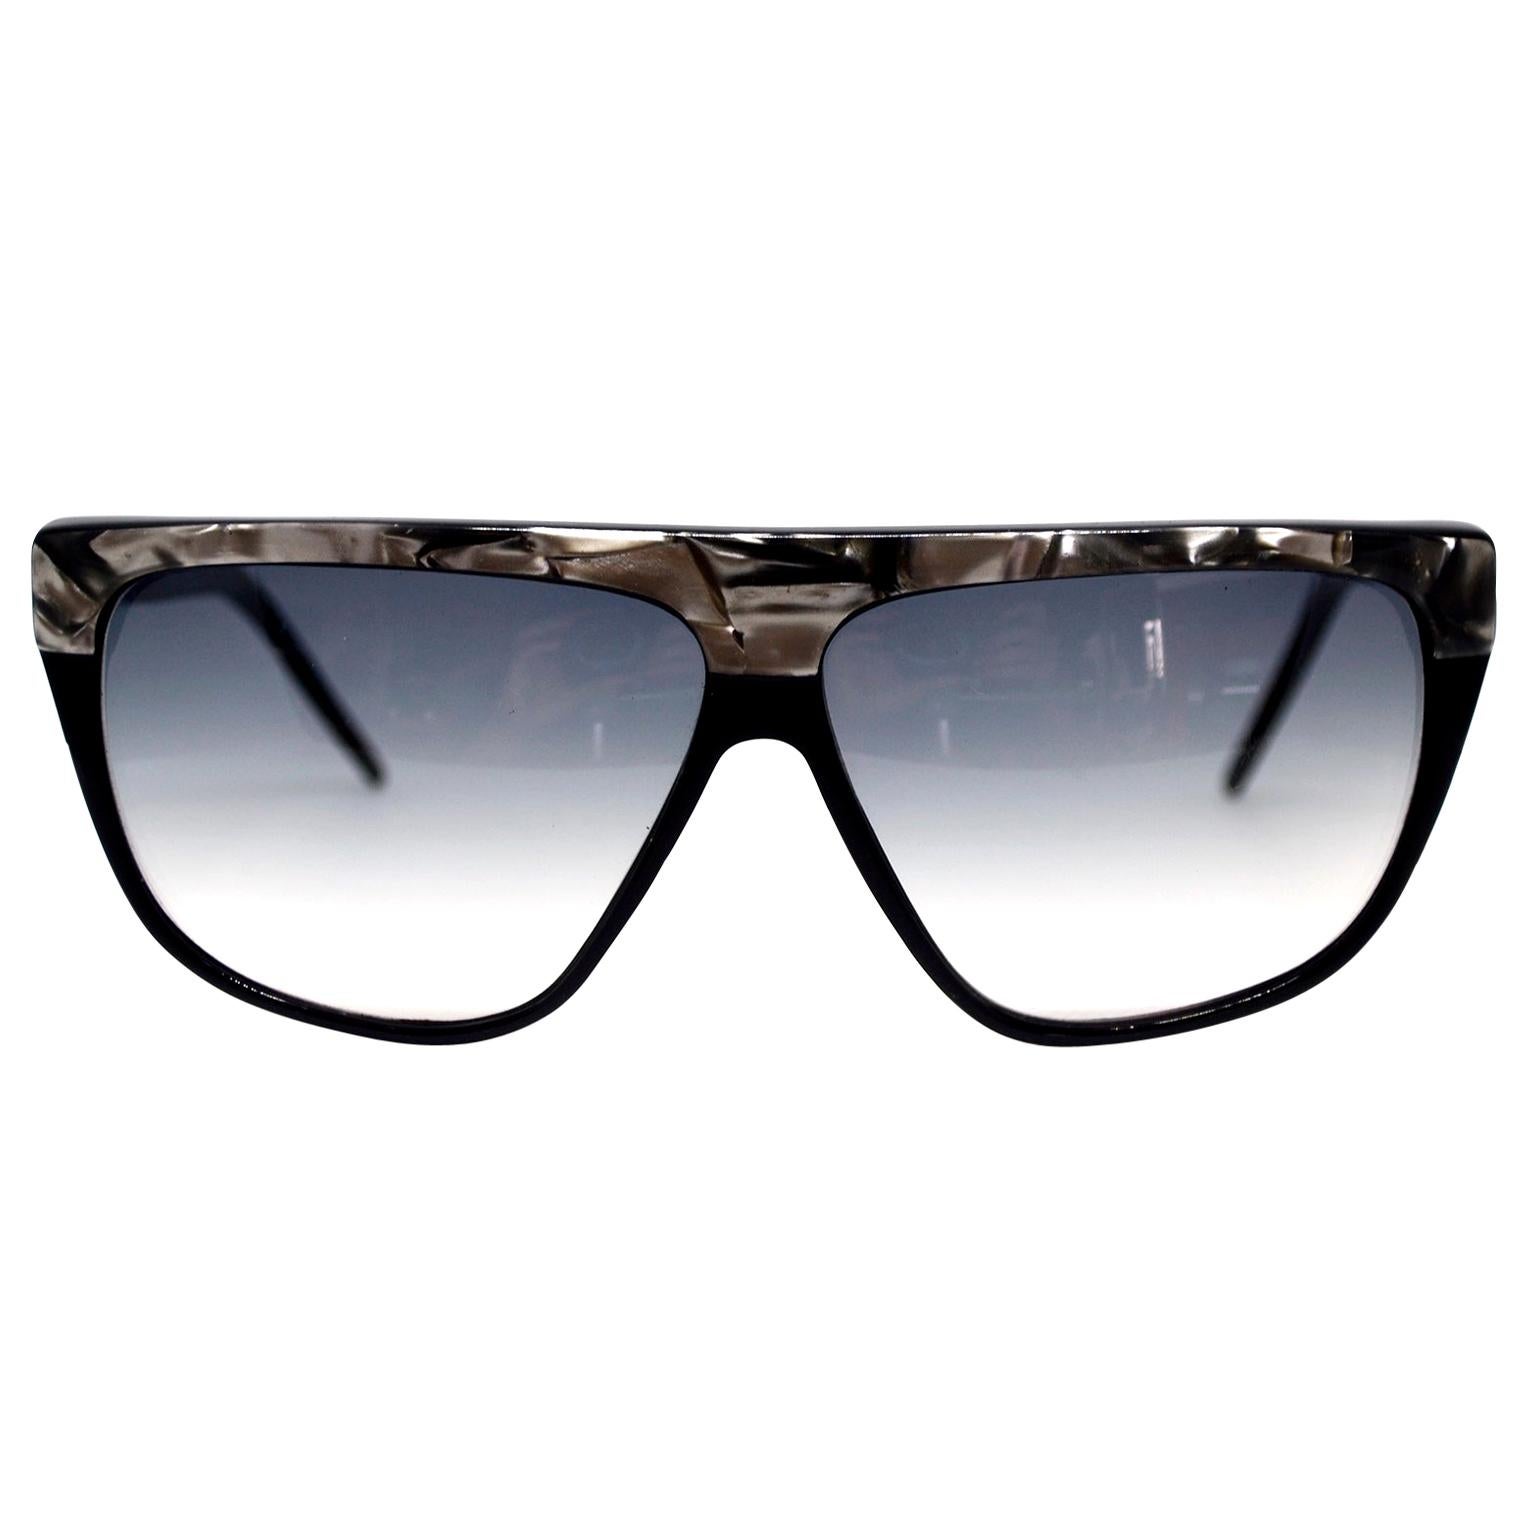 Seltene Vintage Laura Biagiotti Sonnenbrille Accessoires Sonnenbrillen Retro Brillen 